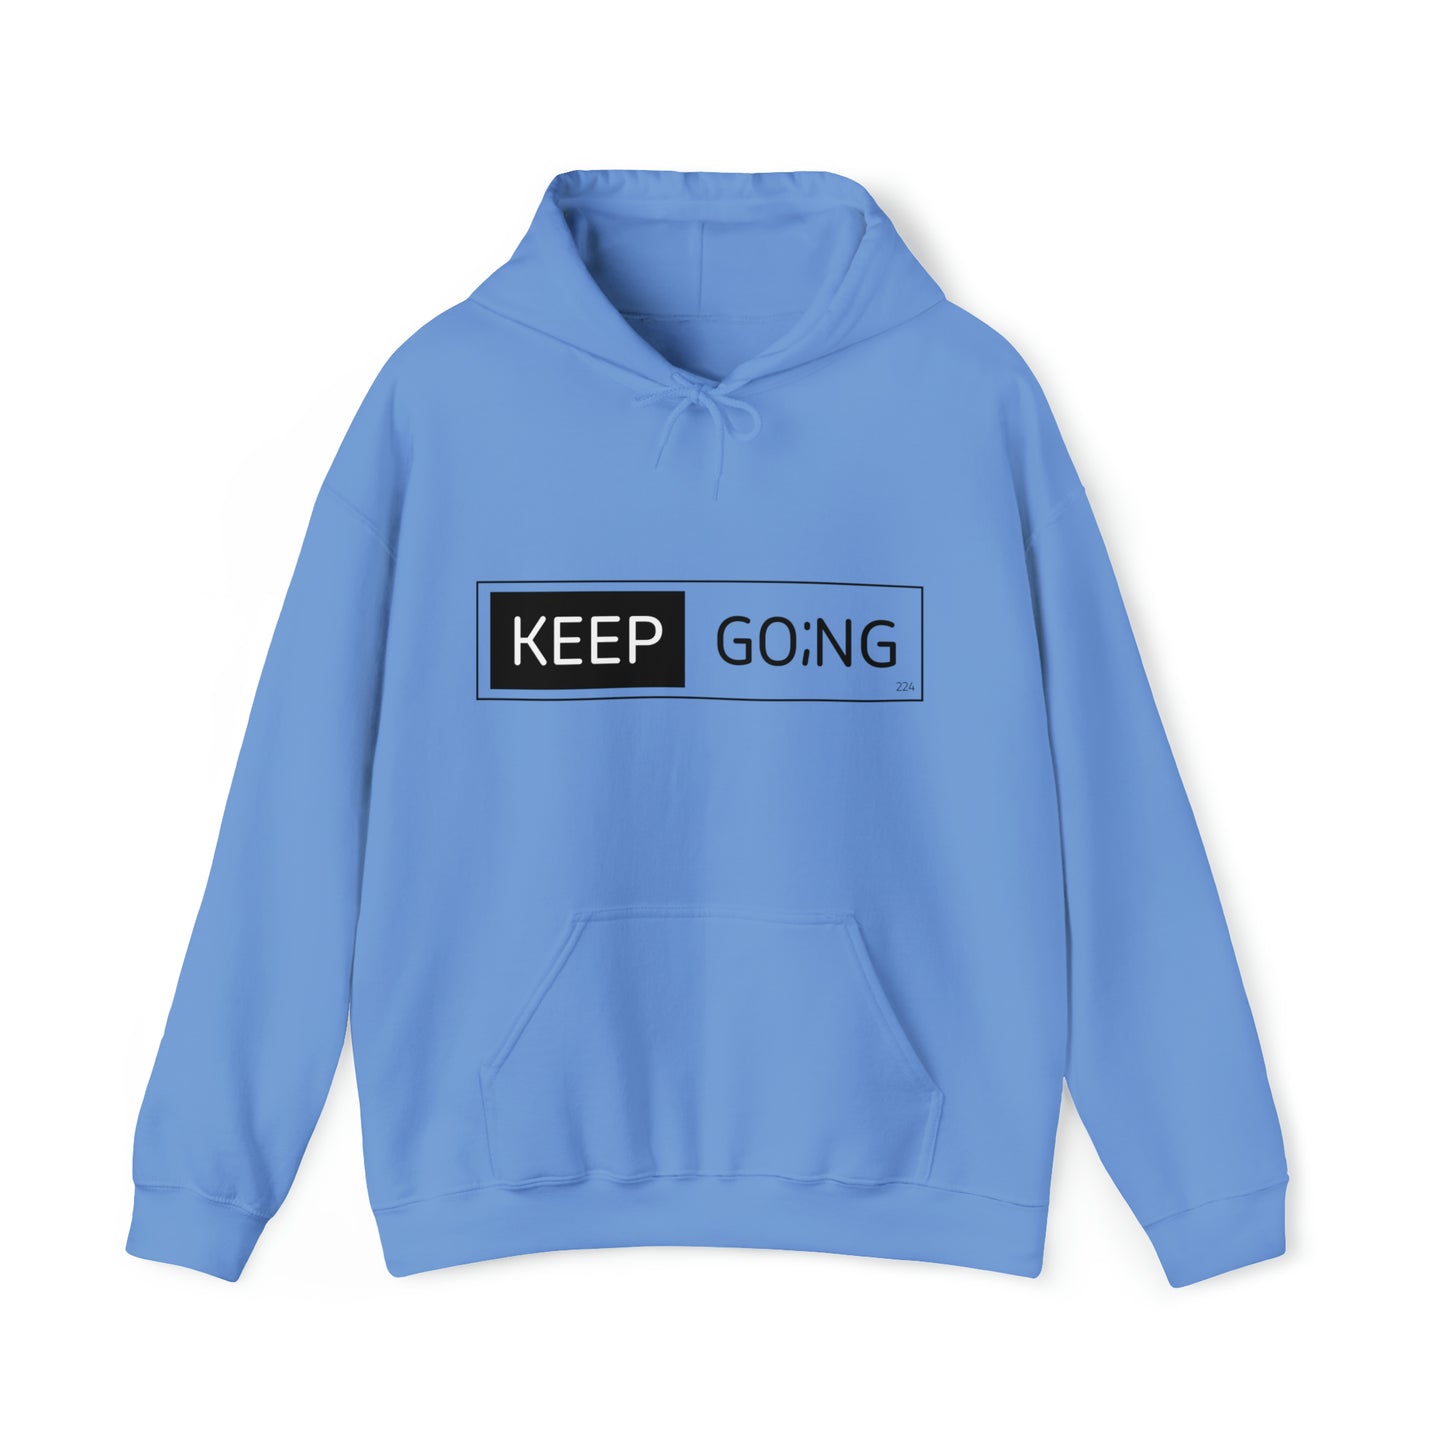 keep go;ng hoodie